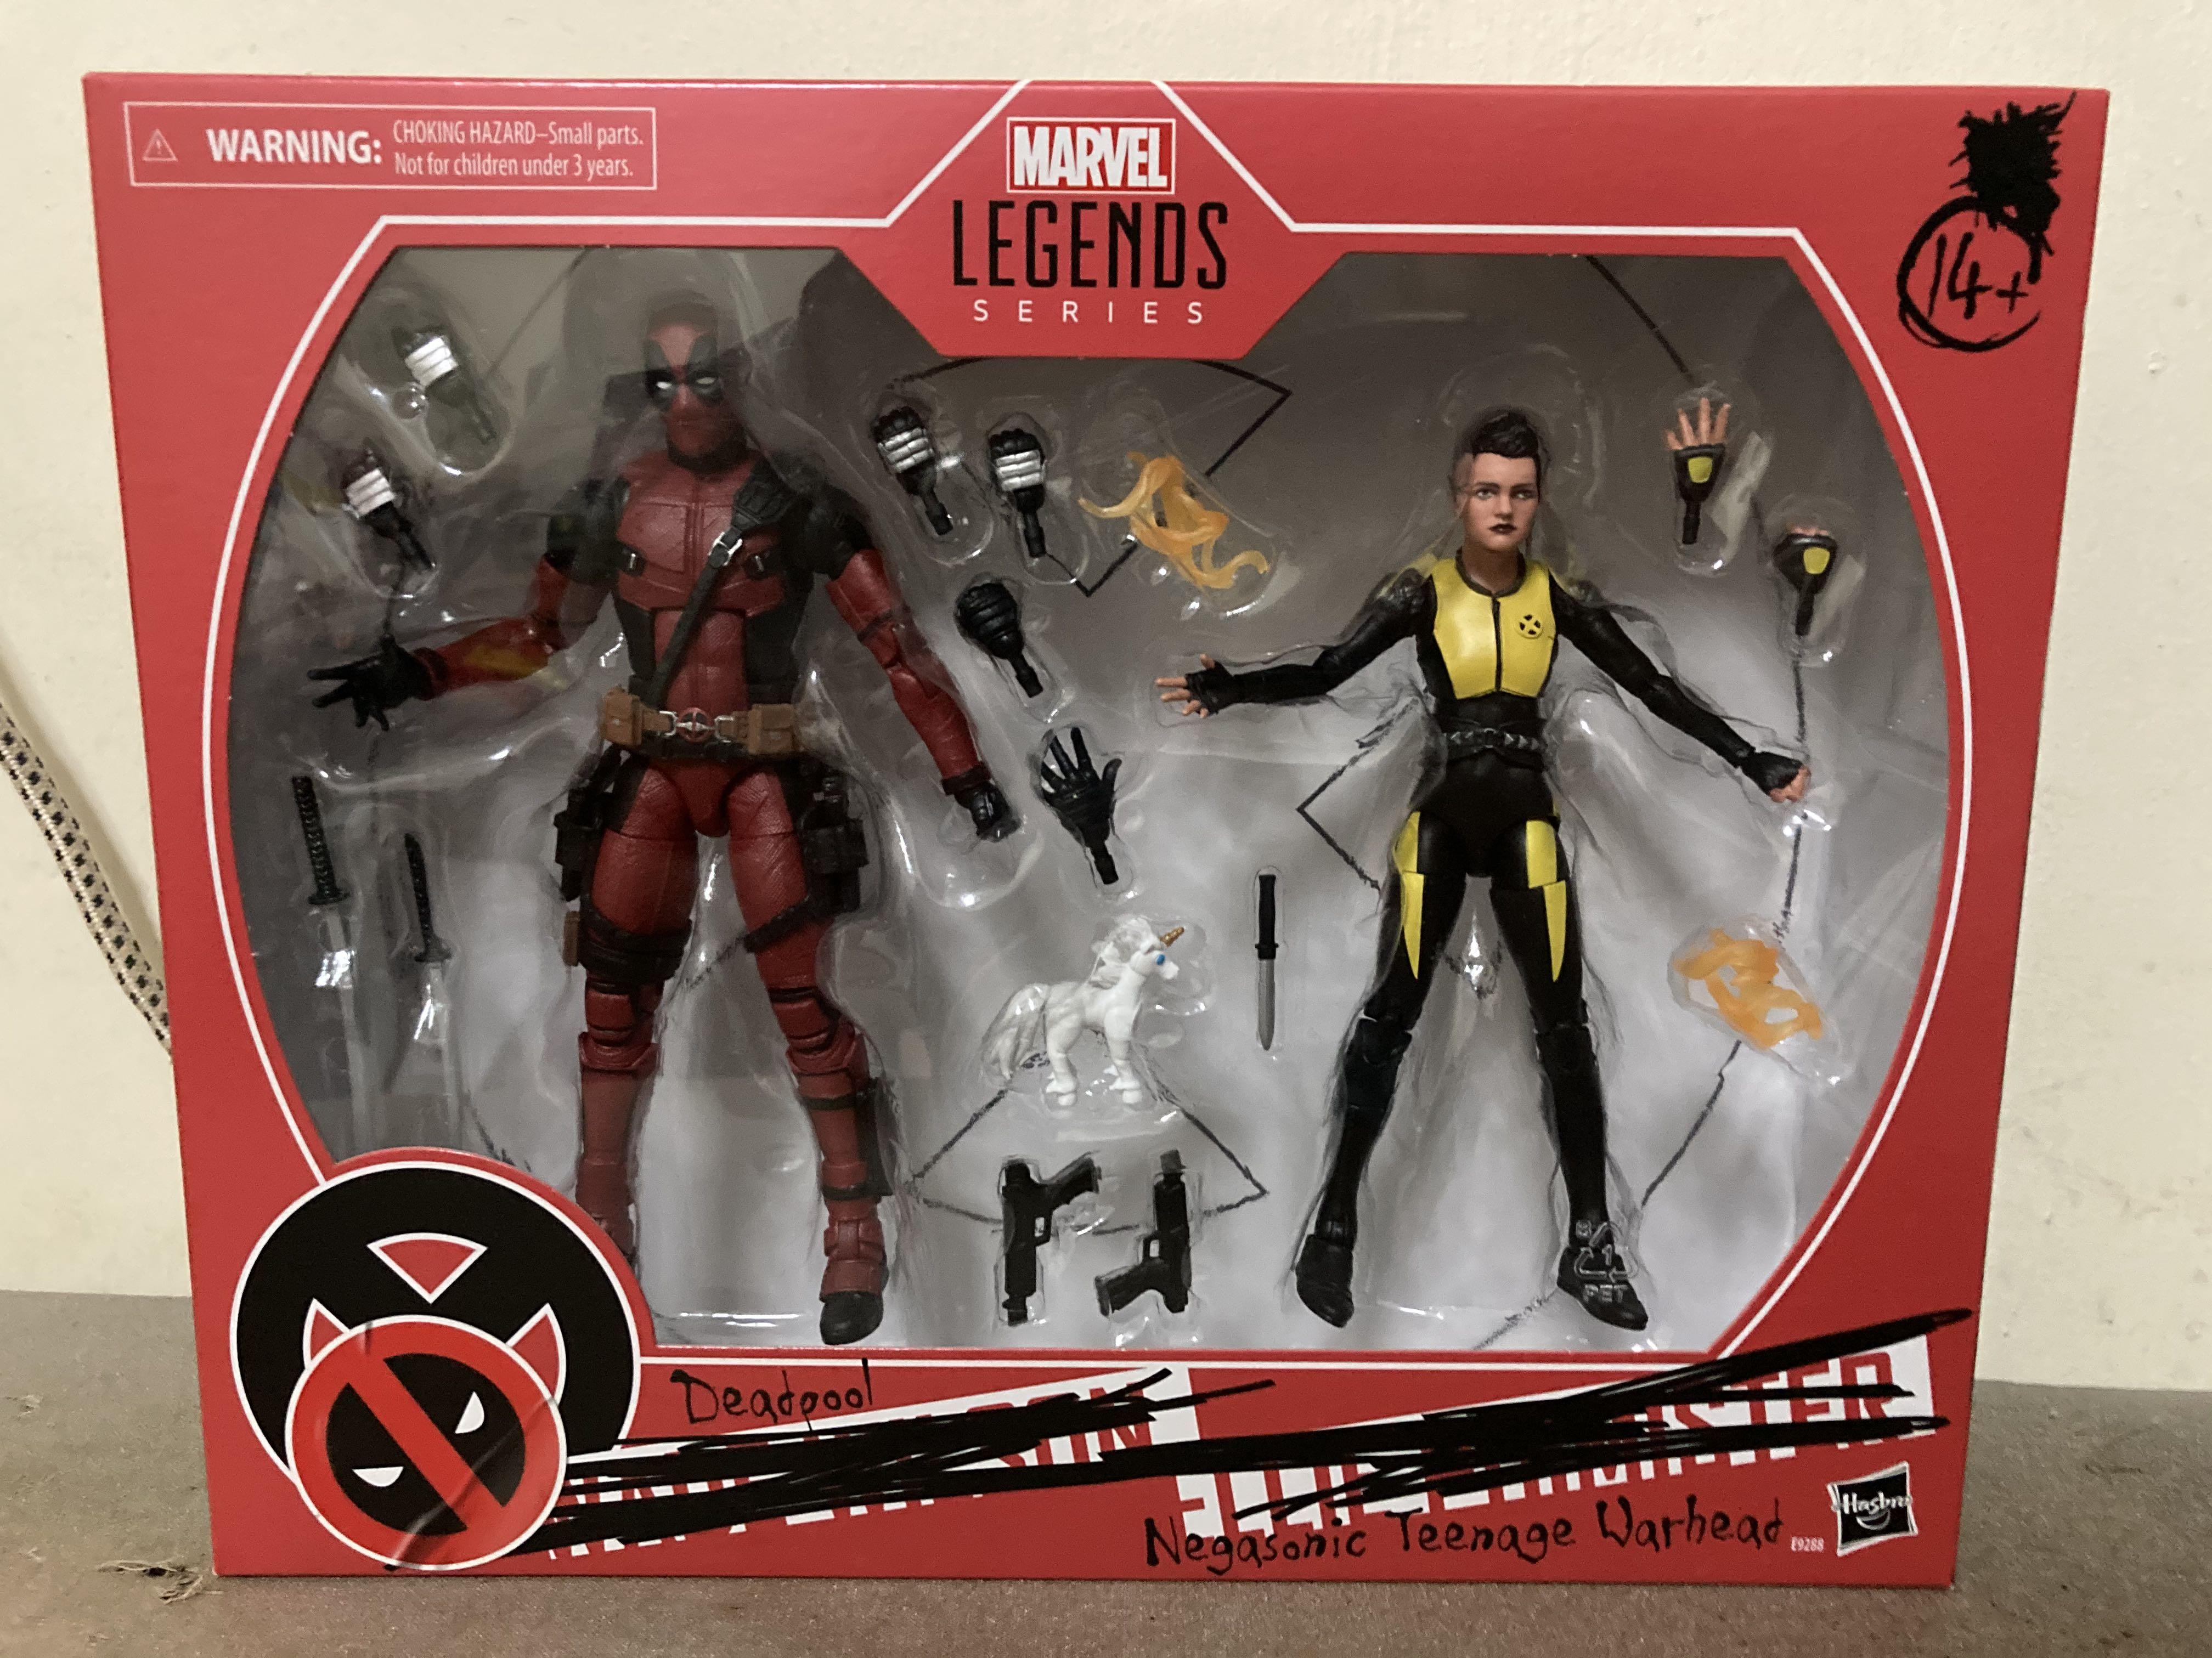 Marvel Legends 6" Deadpool Negasonic Teenage Warhead X-Men Movies Pack Sealed 